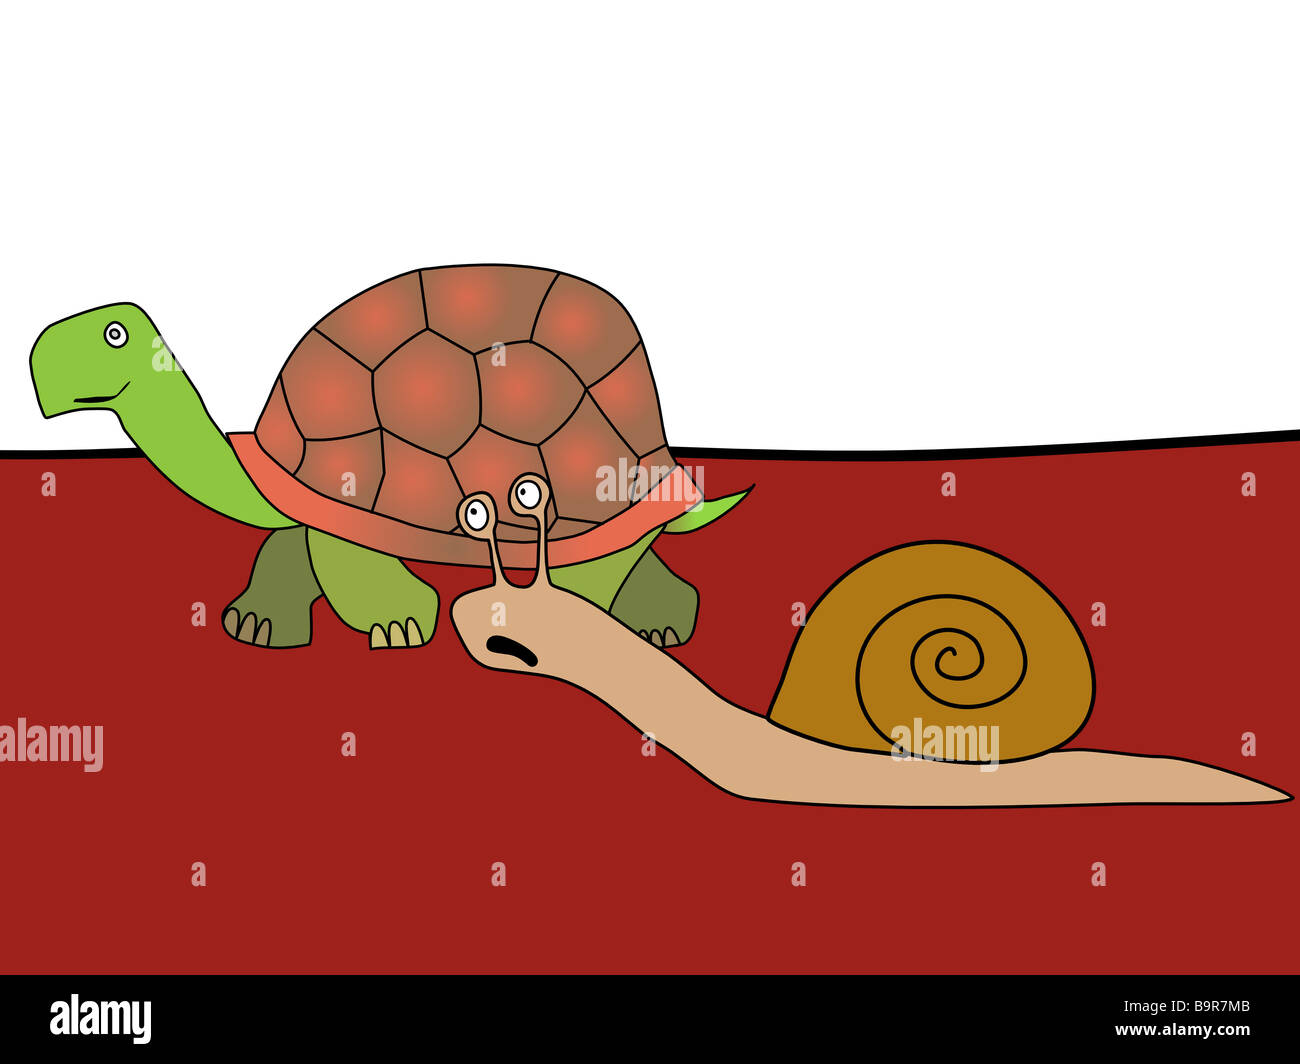 Fast and furious - humorvollen Comic-Zeichnung. Schnecke und Schildkröte. Slowpoke und Express. Handzeichnung. Stockfoto